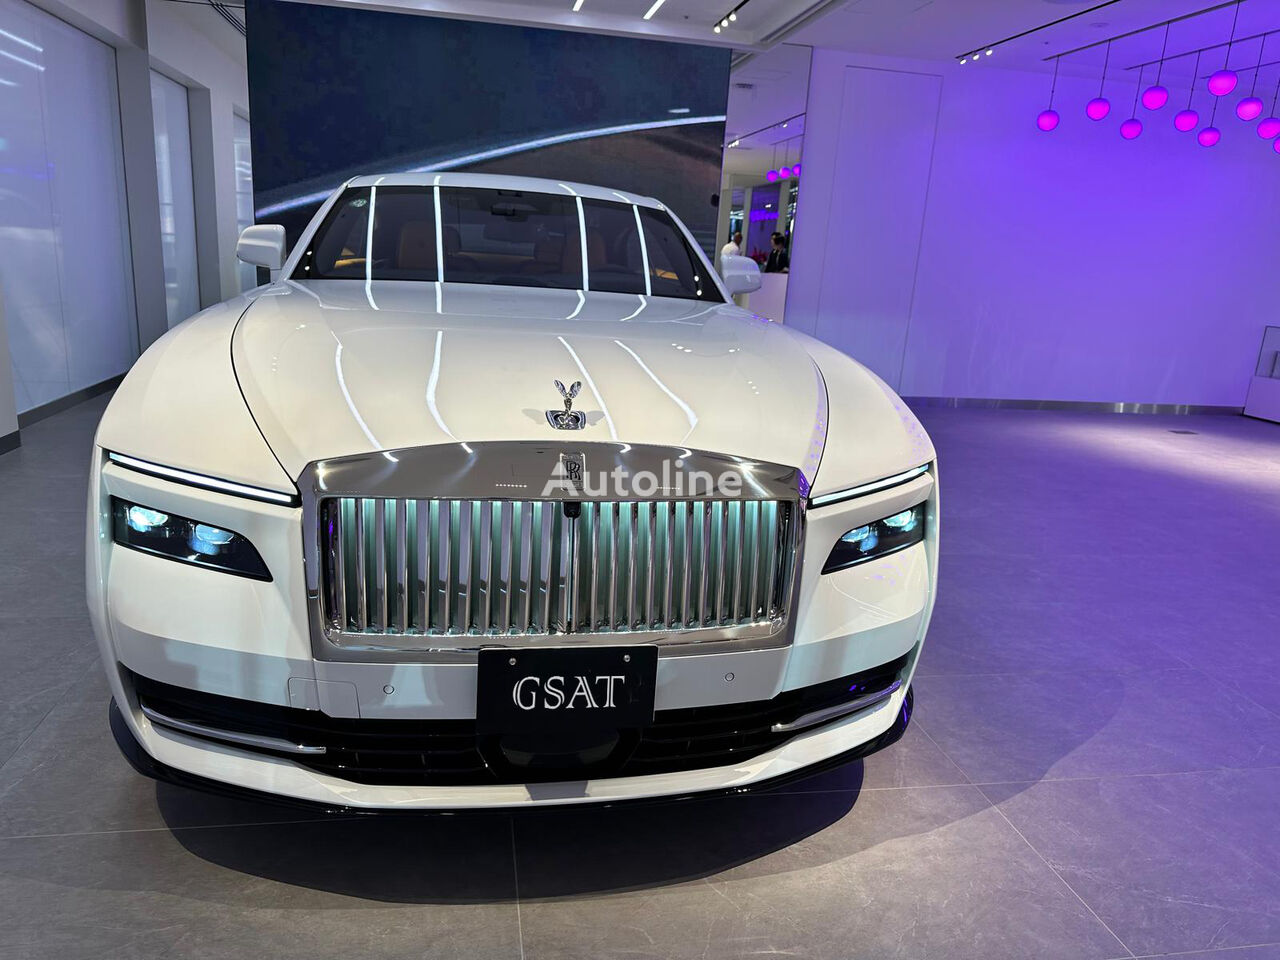 καινούριο SUV Rolls-Royce Spectre: The Epitome of Luxury